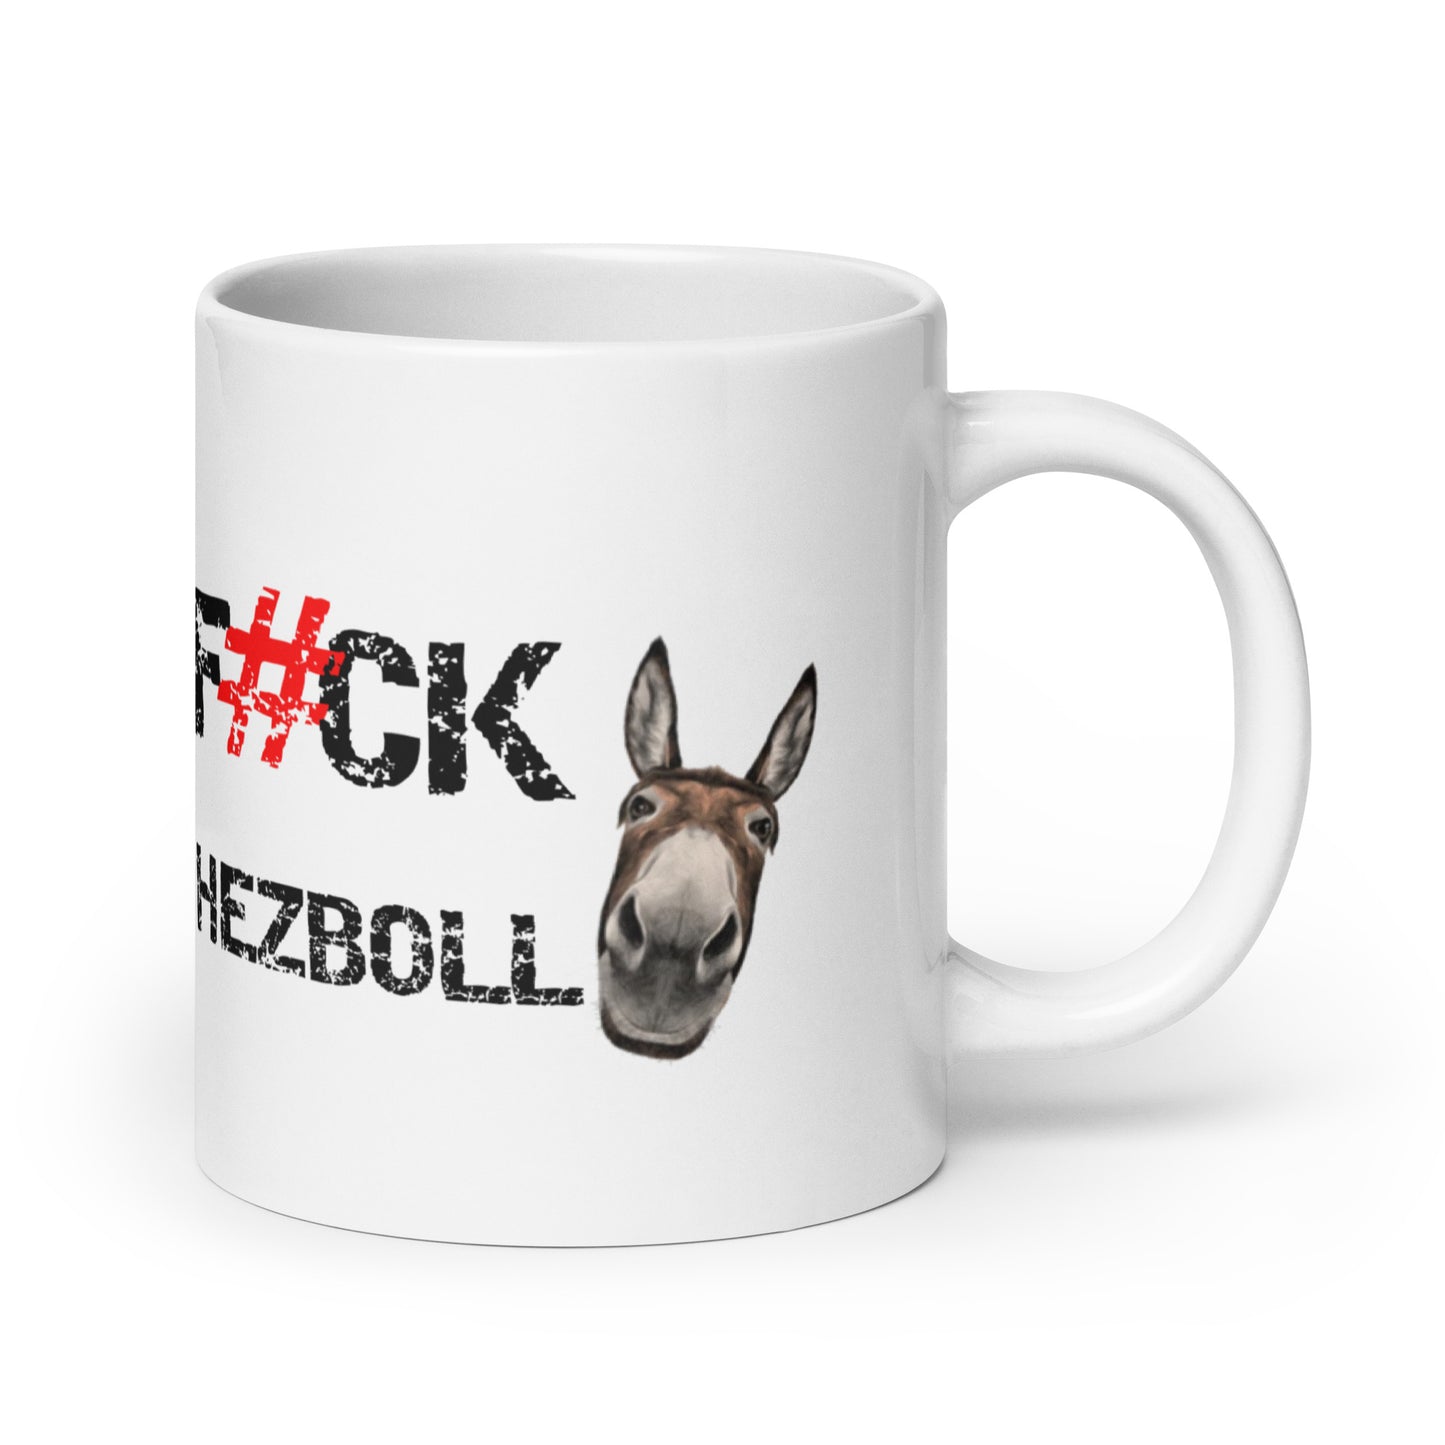 F#CK HEZBOLLASS White glossy mug